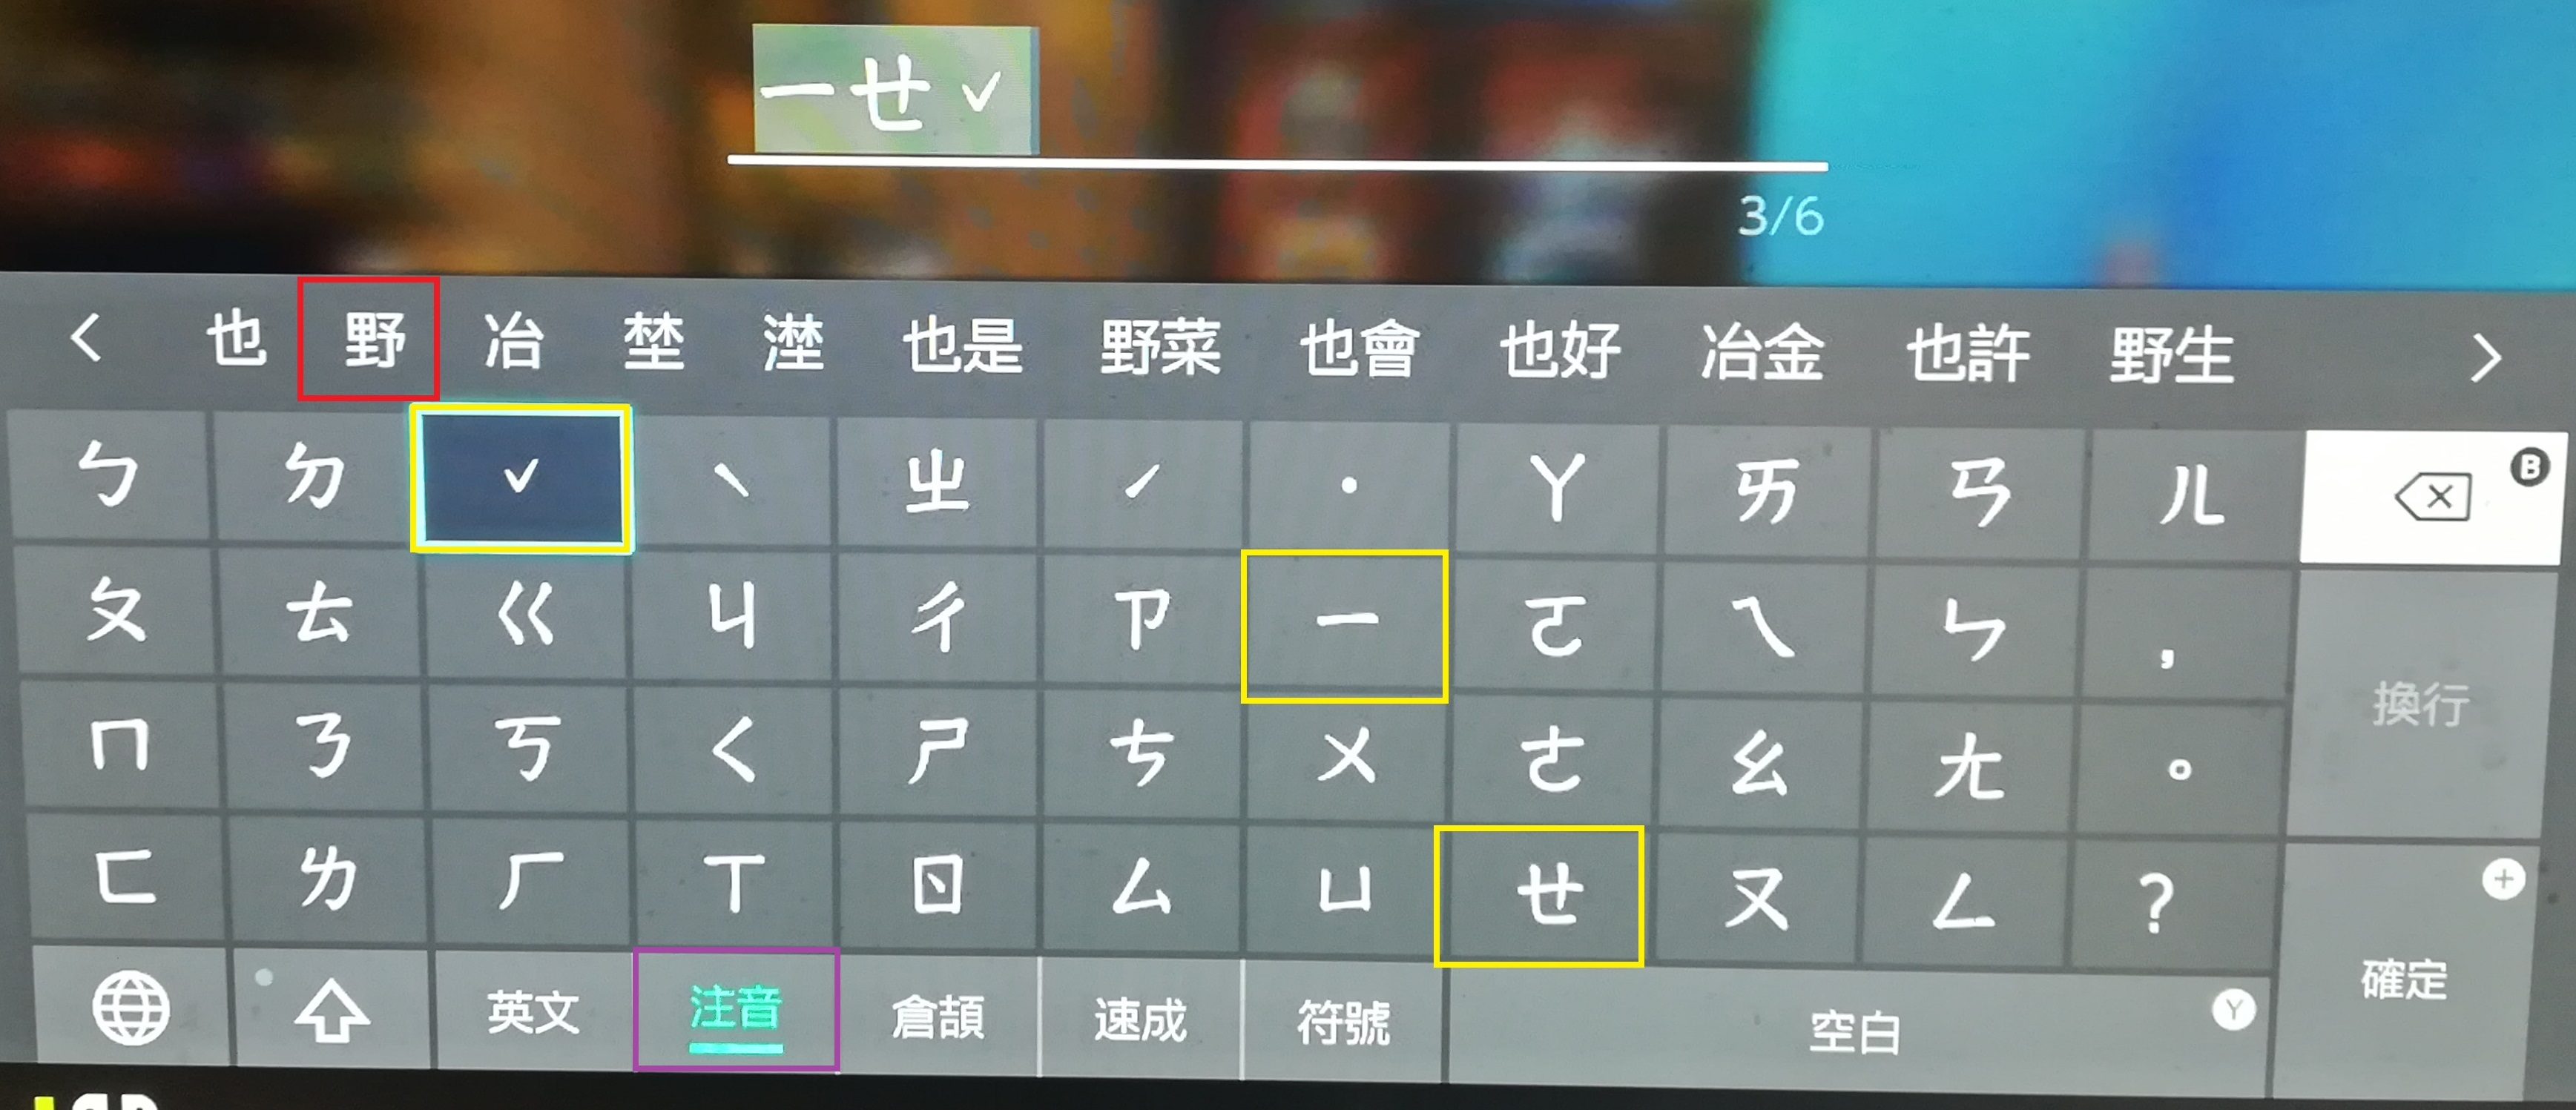 ポケモン剣盾で中国語の漢字ニックネームを付ける方法 繁体字 簡体字 テトリスの海外旅行